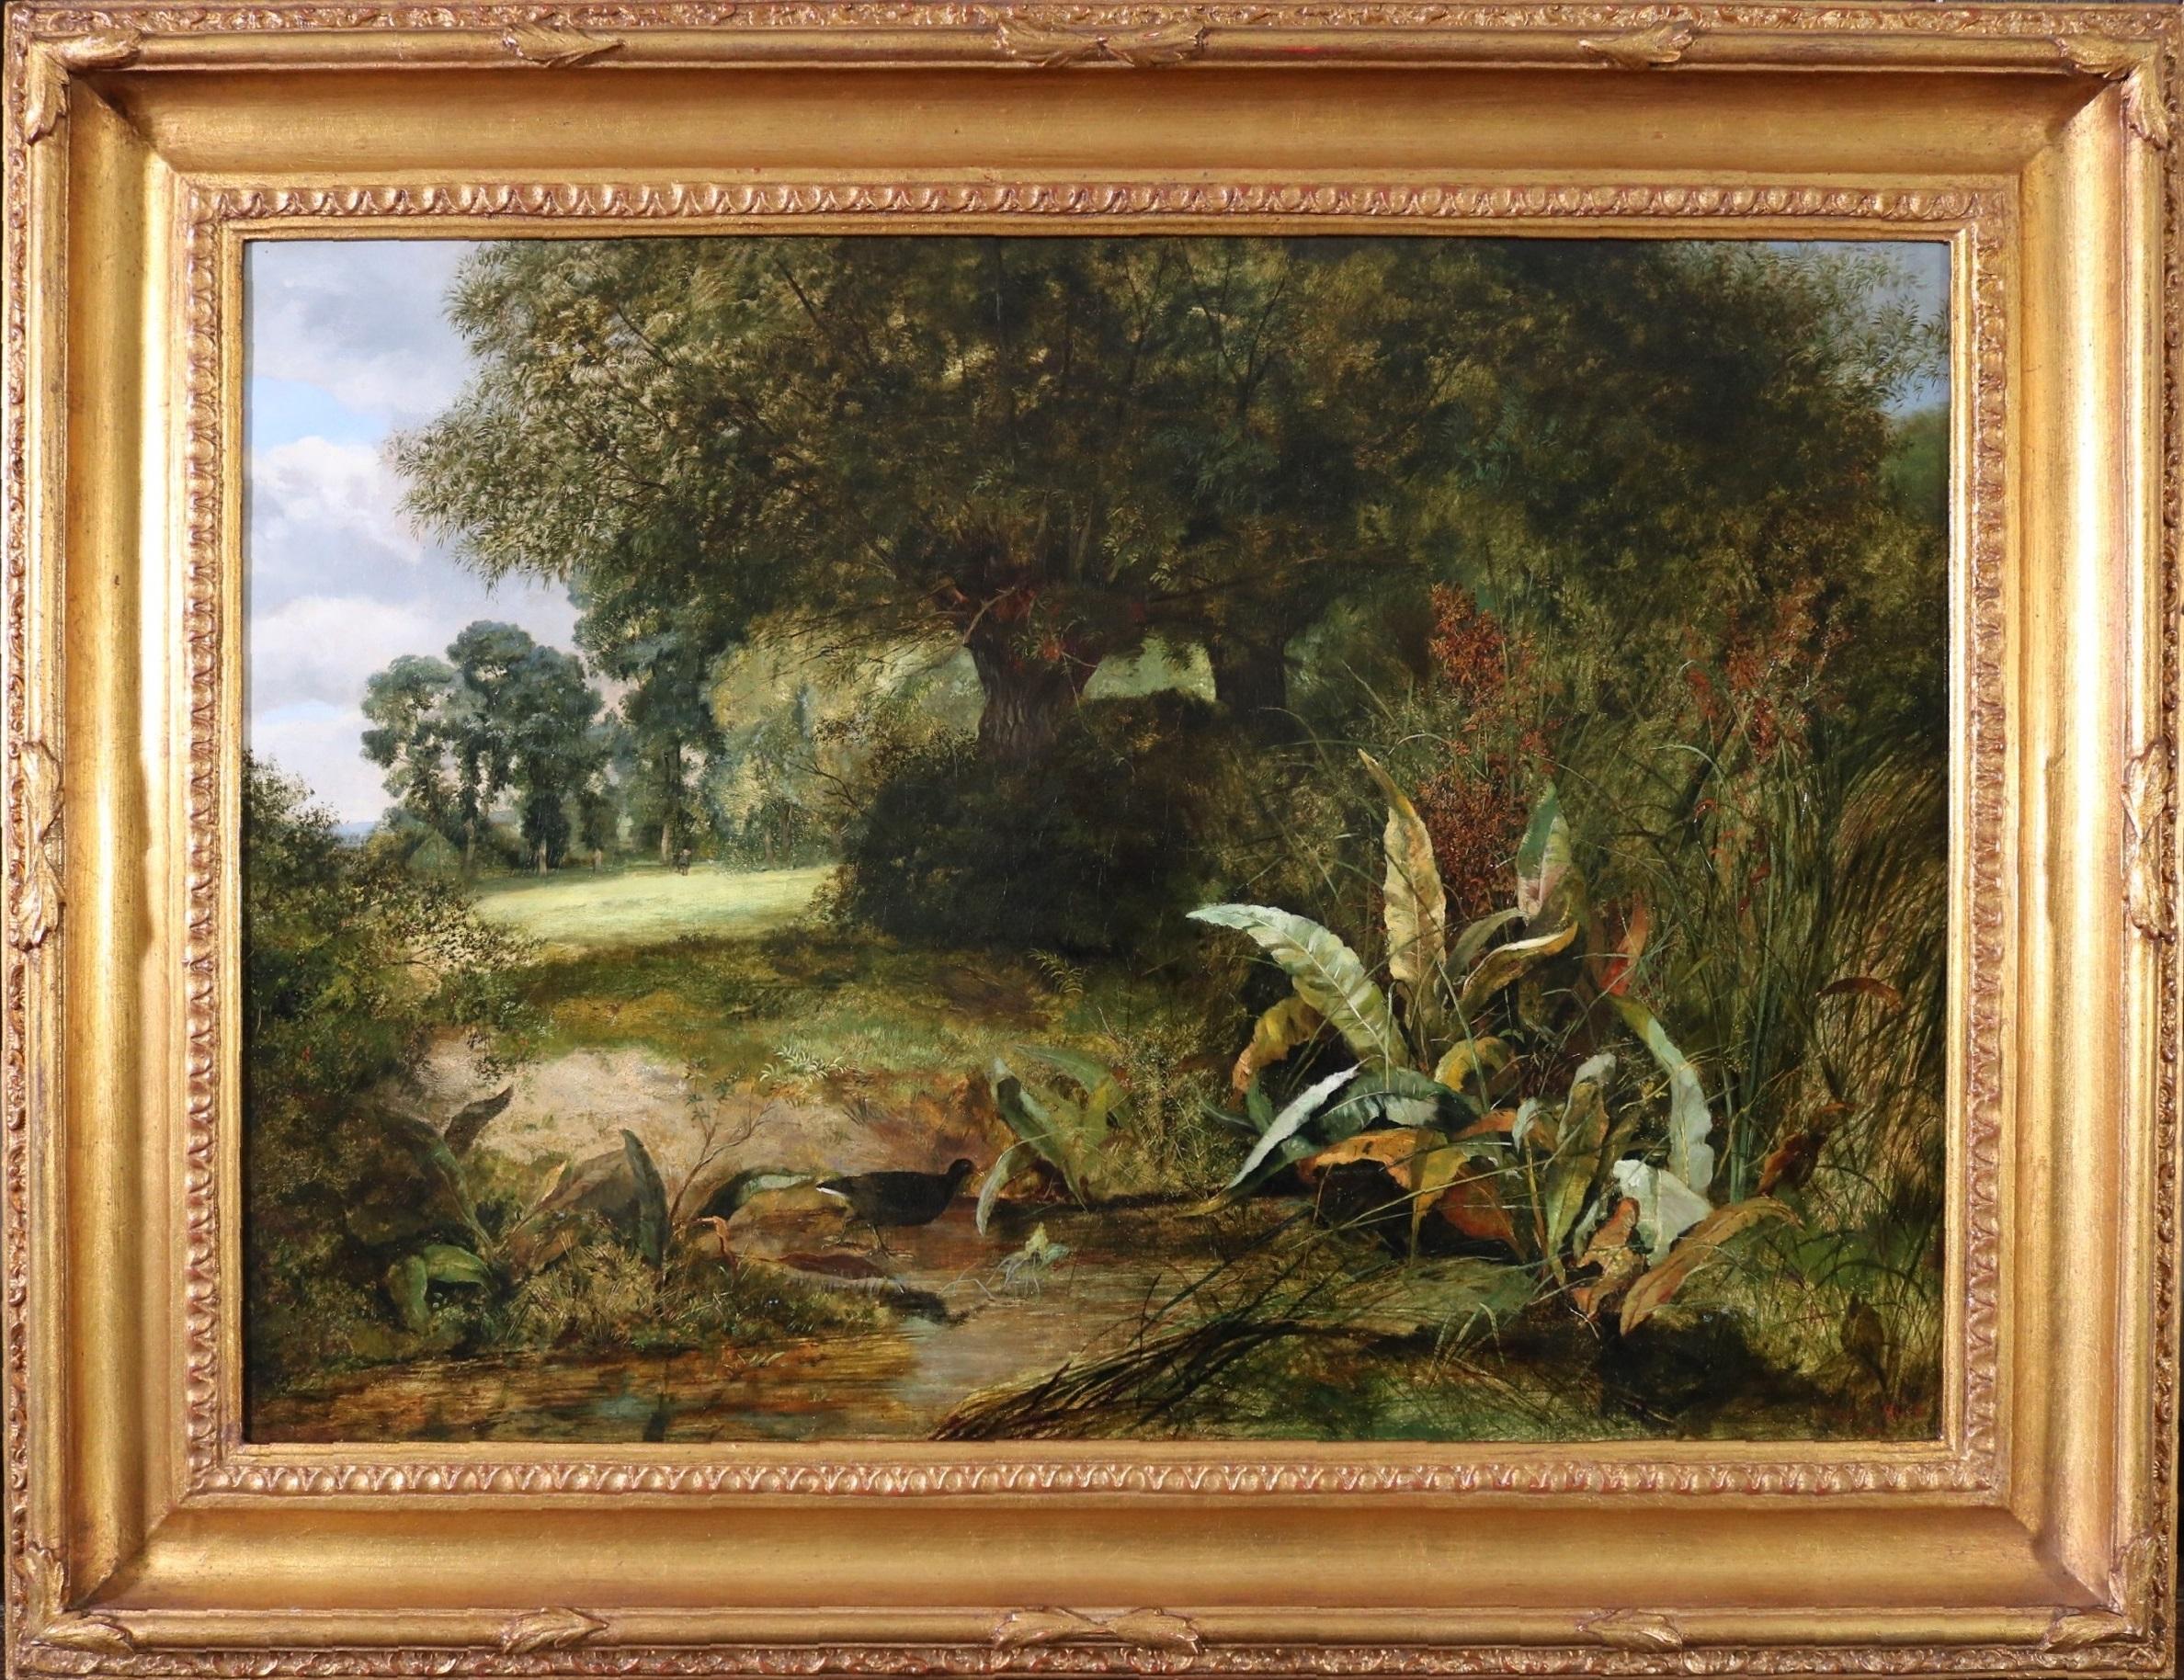 Peinture à l'huile de l'Académie royale du 19e siècle - Paysage de rivière d'été victorien anglais - Painting de Arthur James Stark